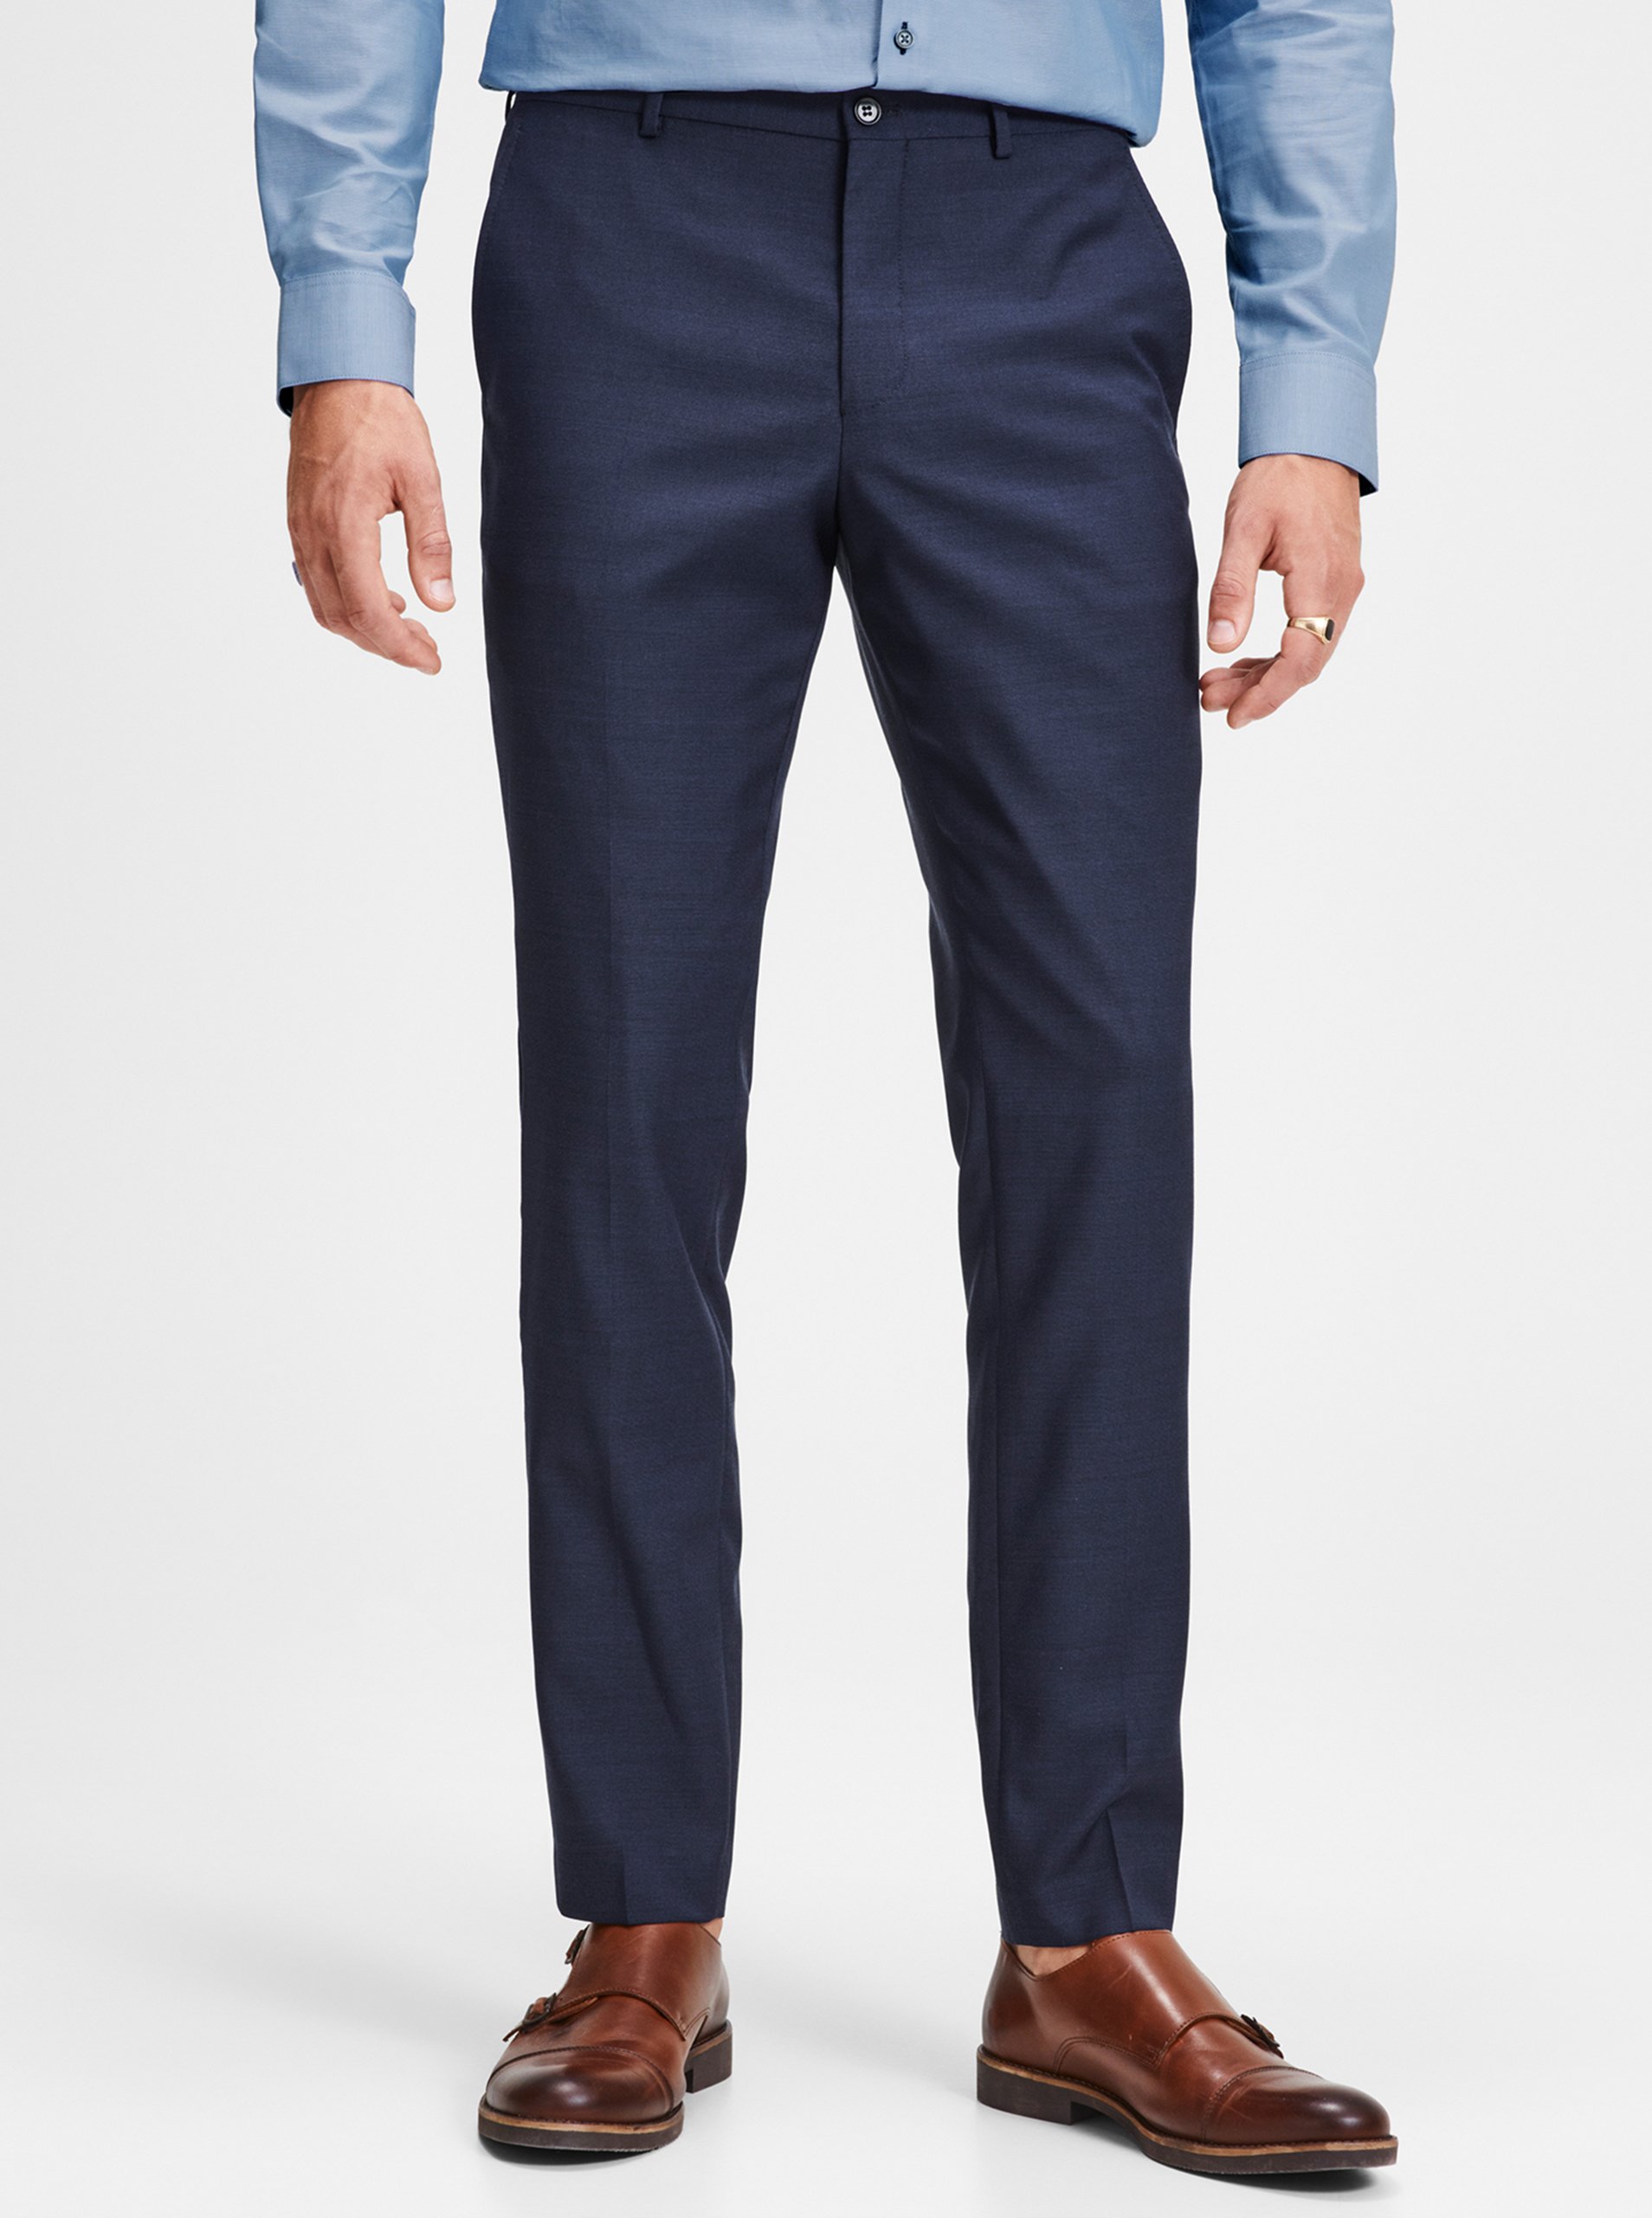 E-shop Tmavě modré oblekové kalhoty s příměsí vlny Jack & Jones Laris